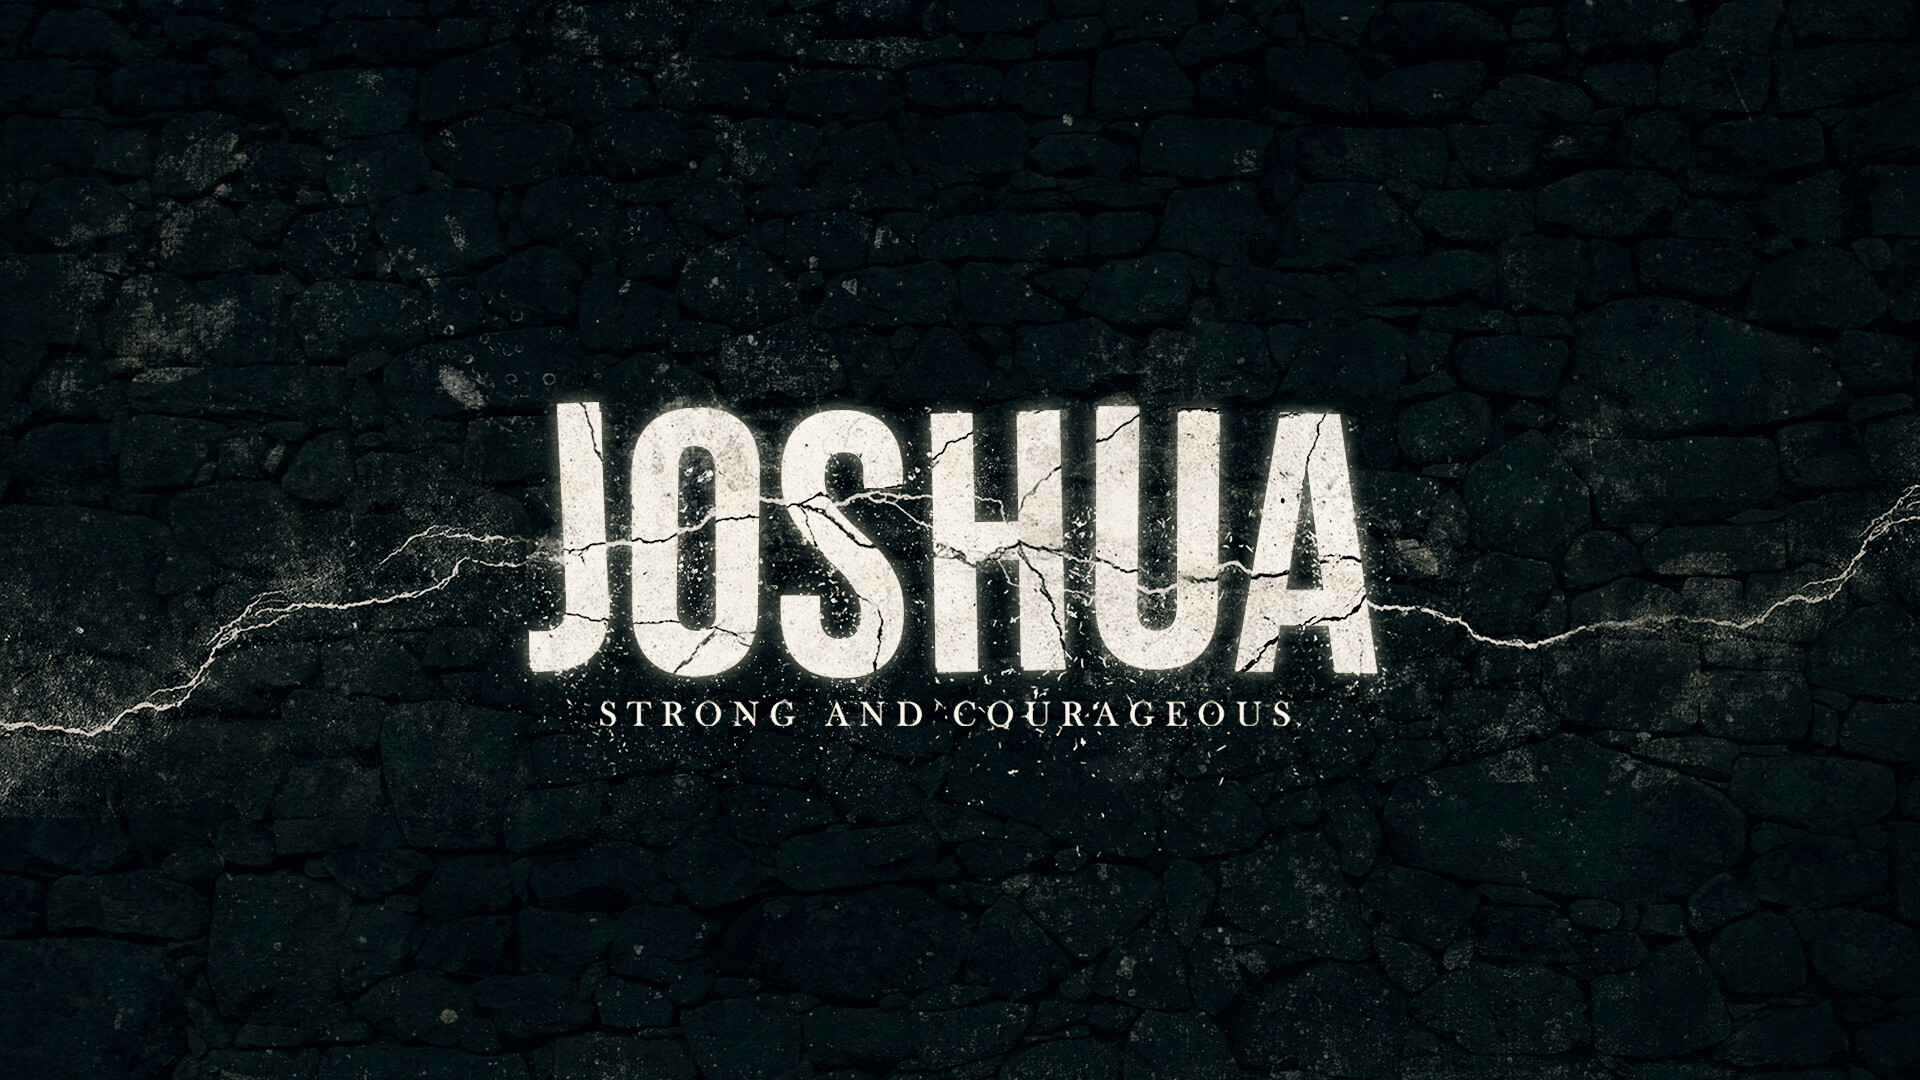 Introducing Joshua: Part 2